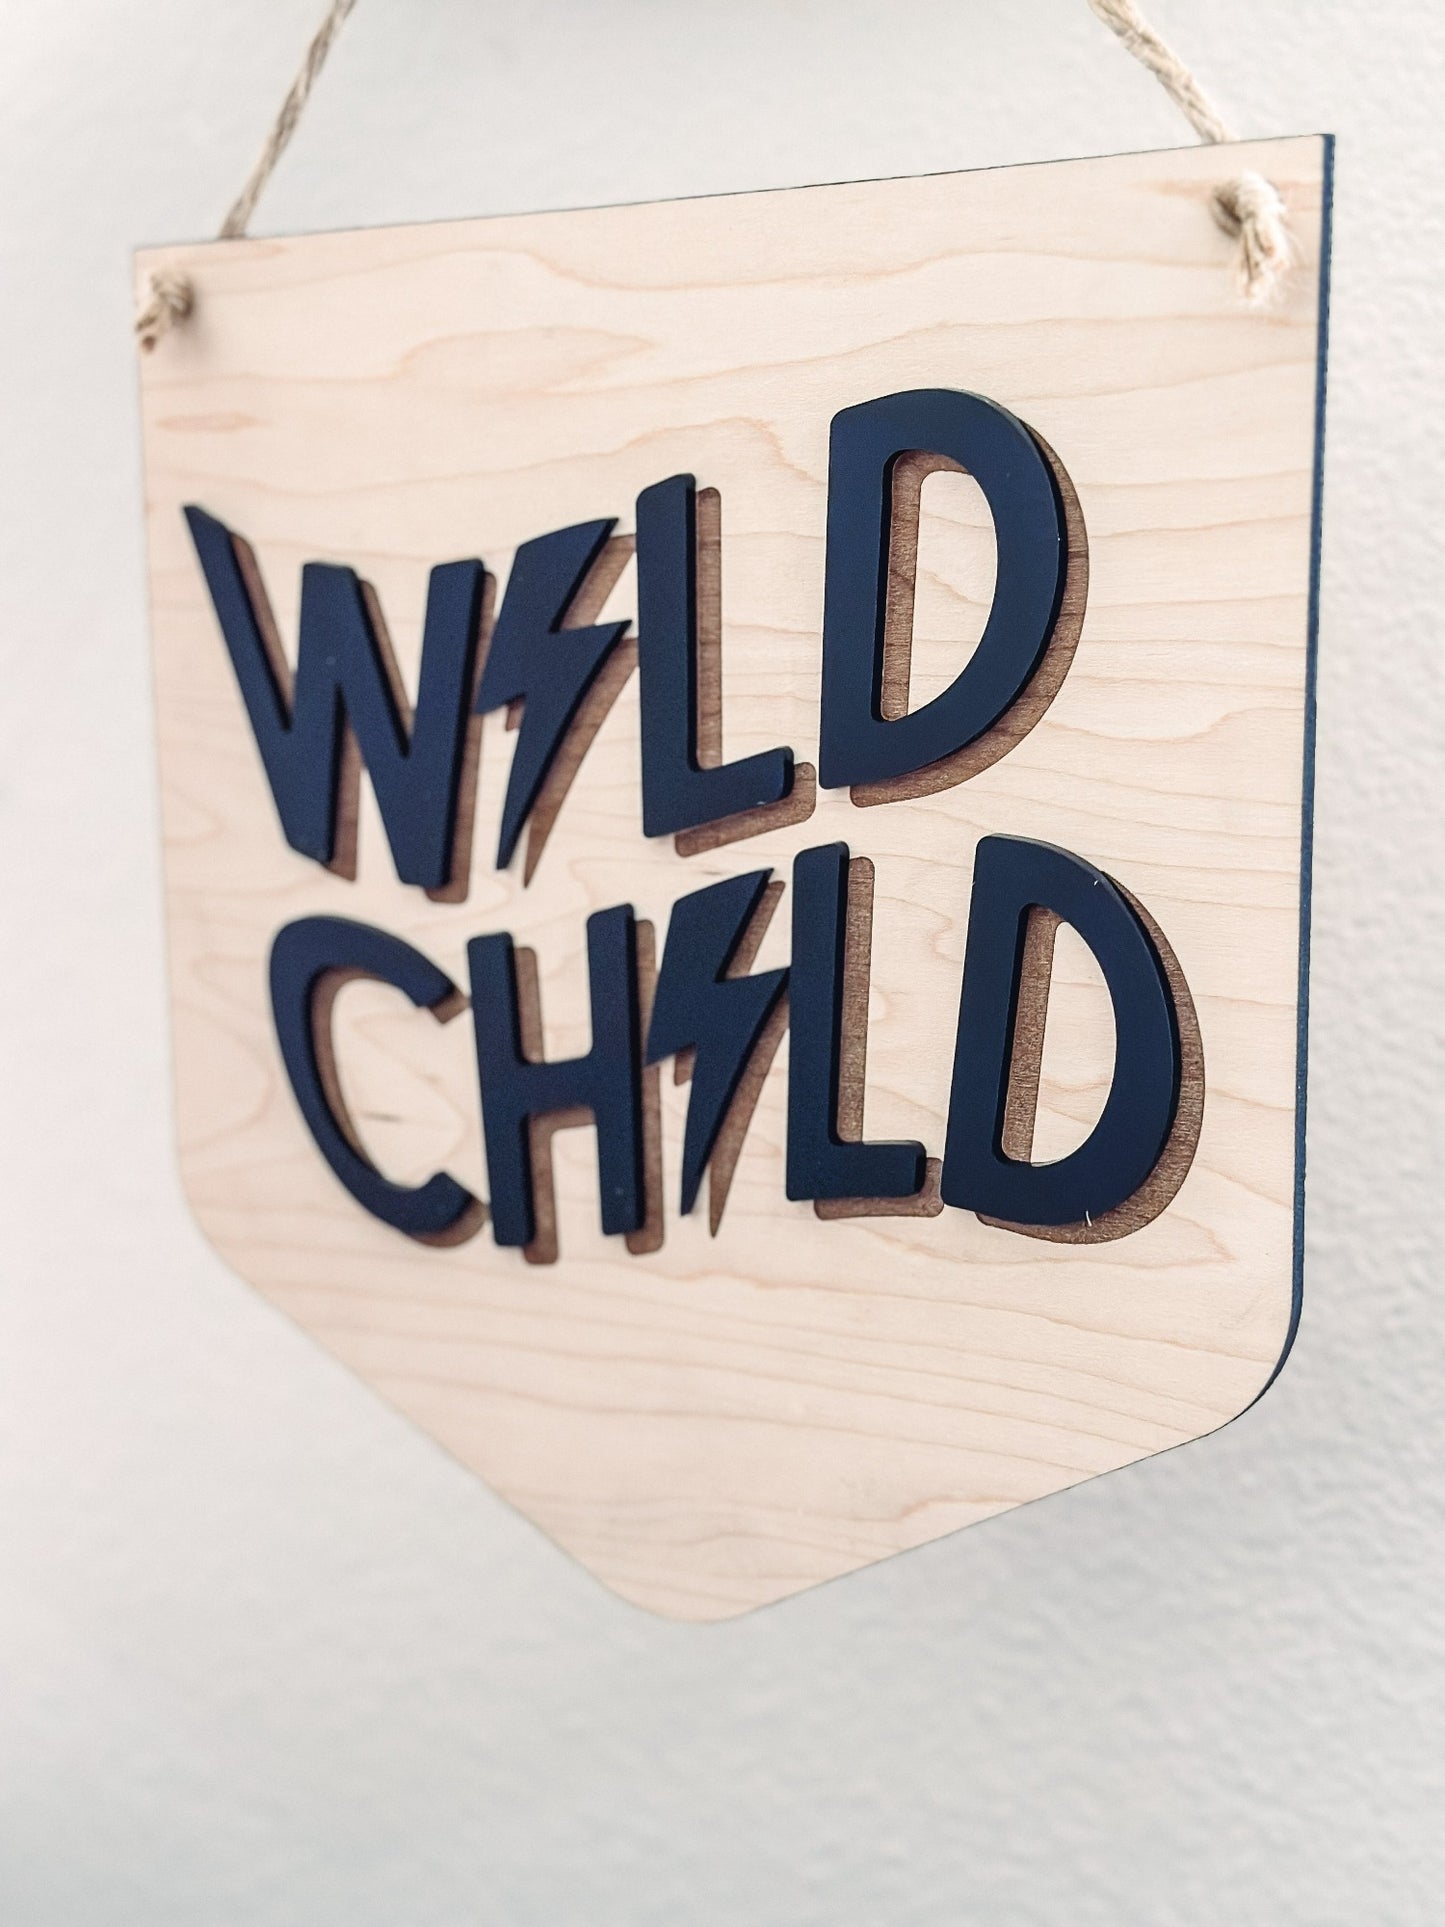 Sign - Wild Child